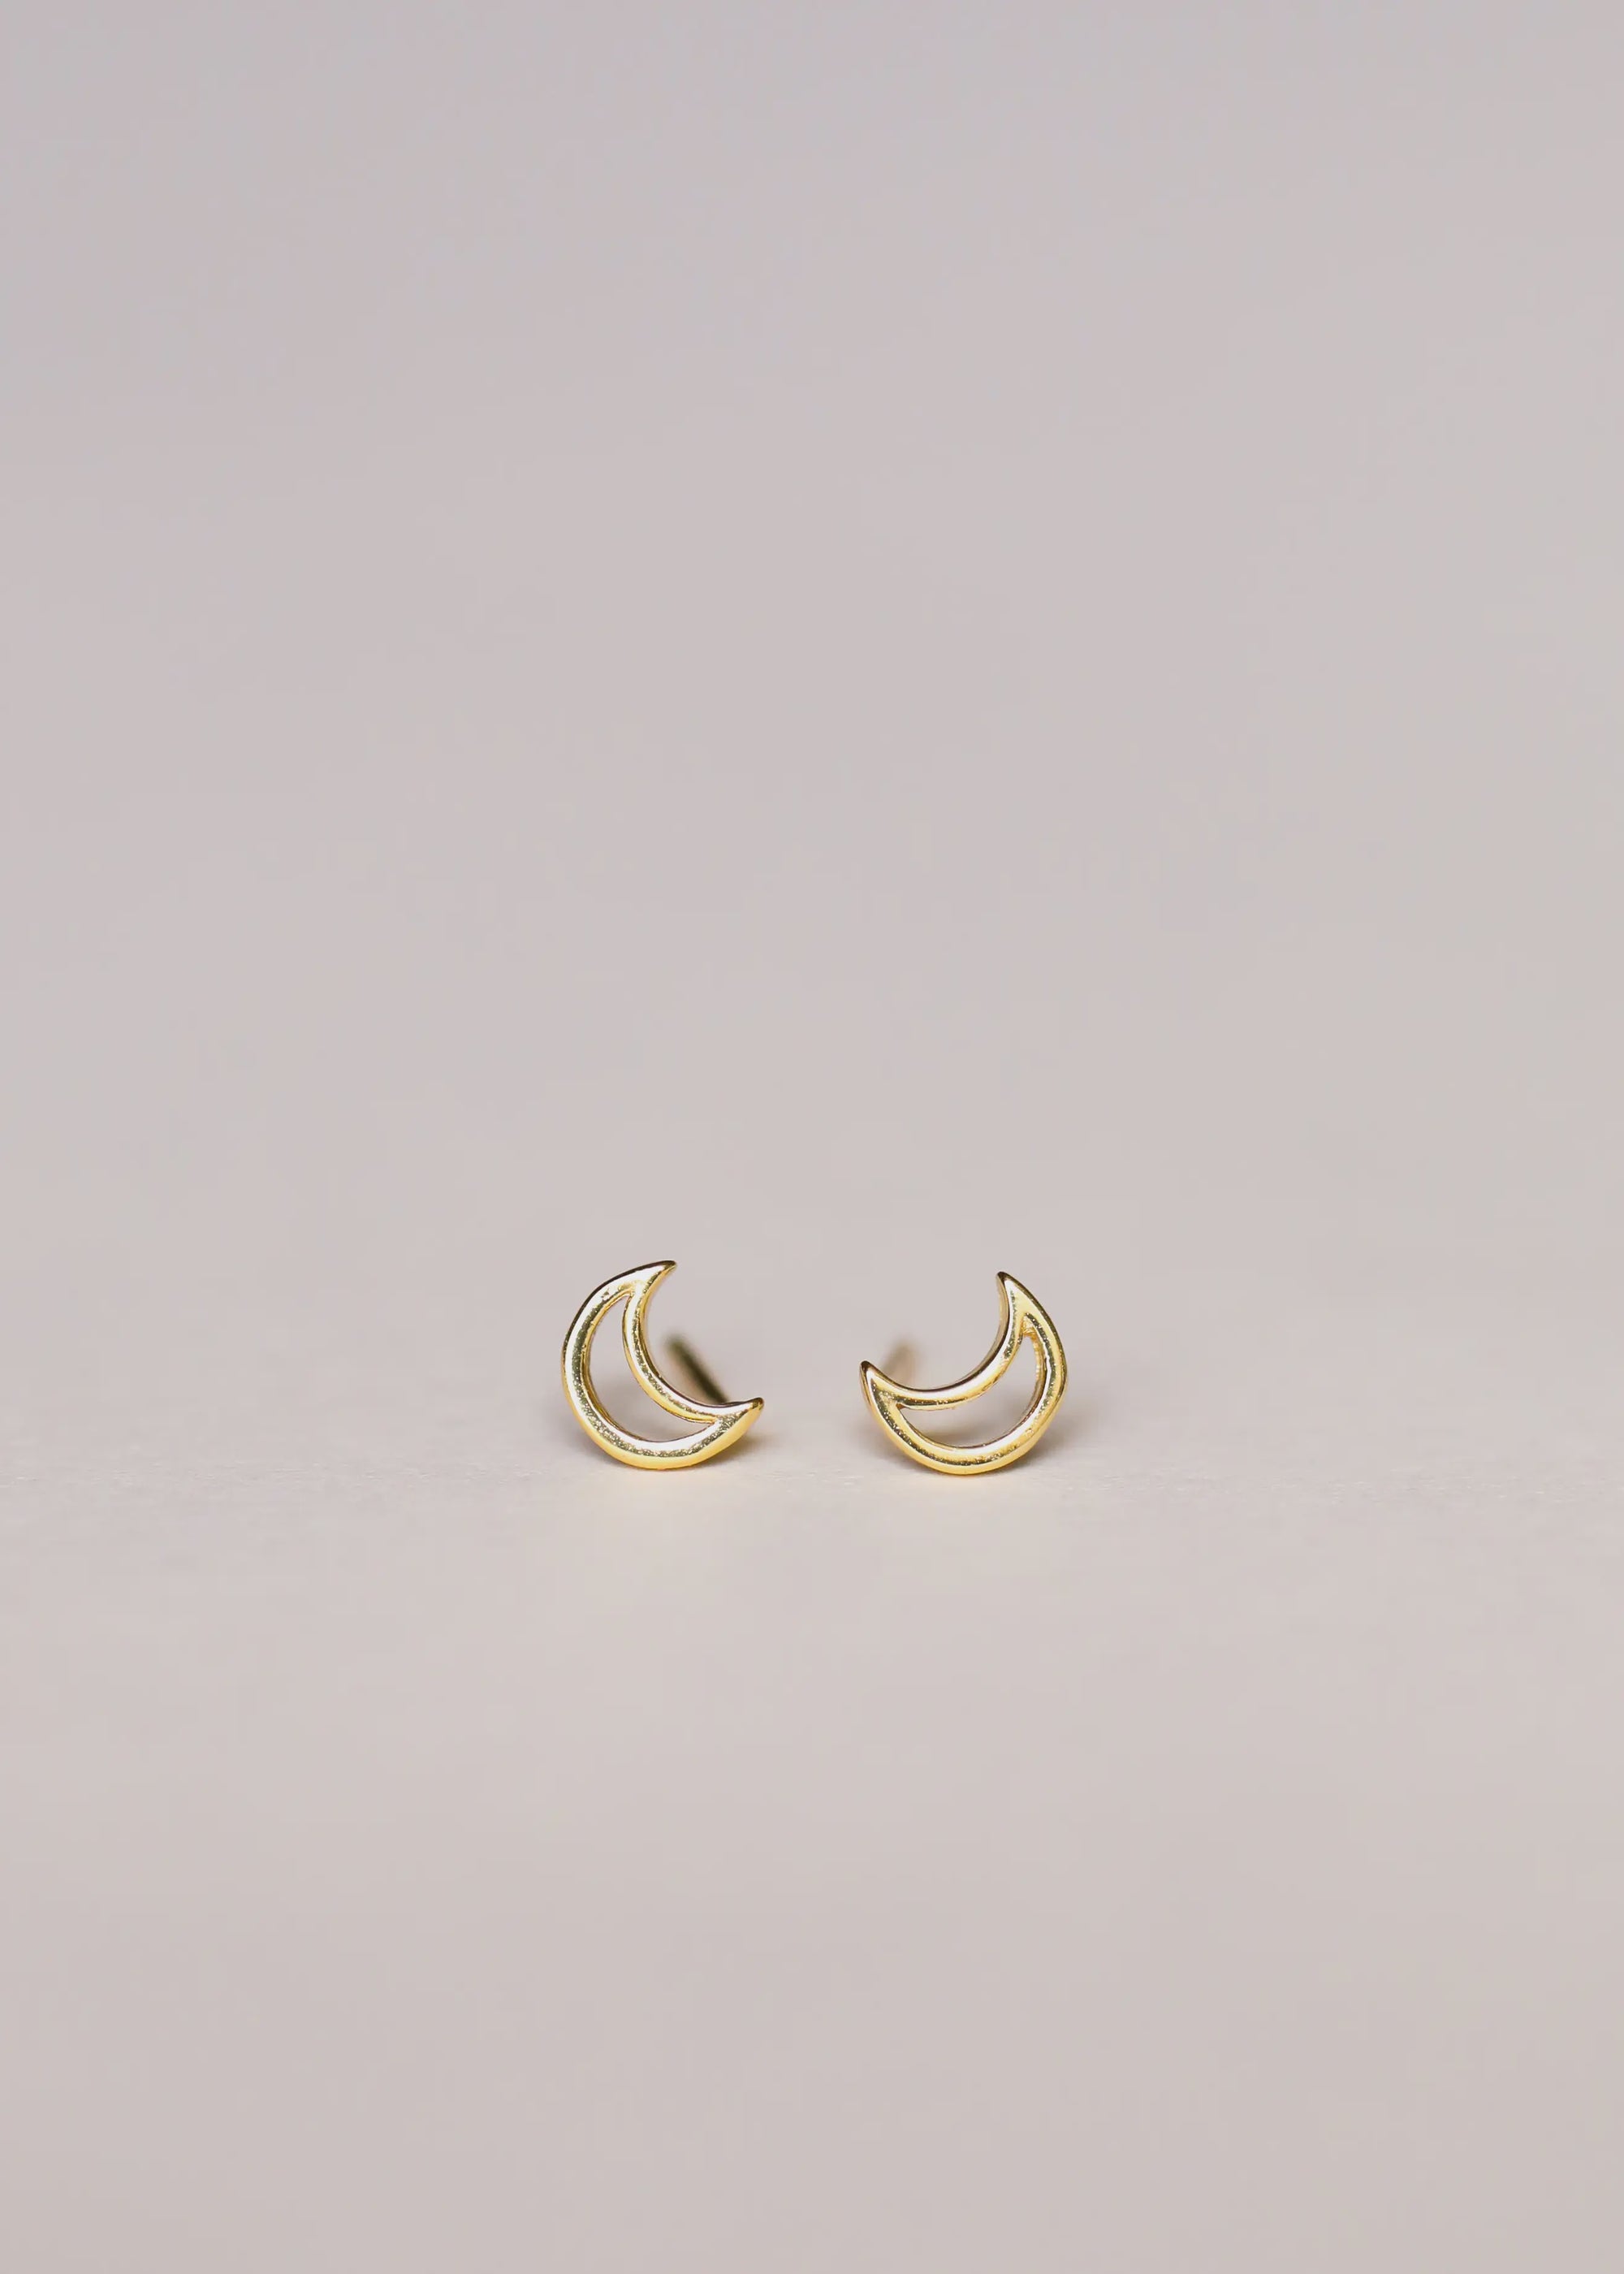 The Moon Minimalist Earrings by JaxKelly